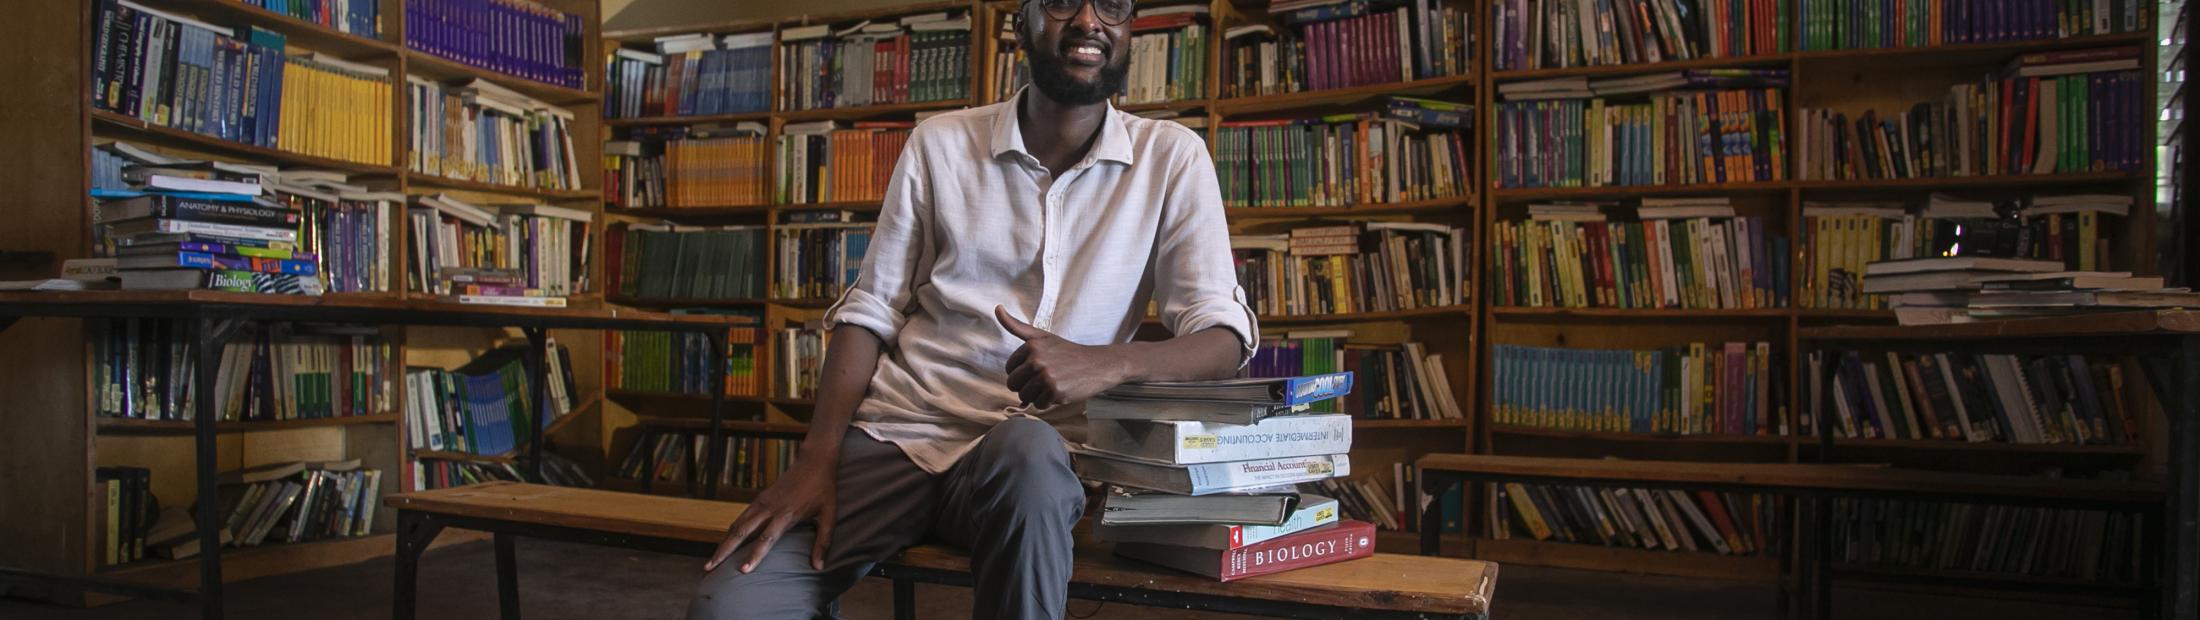 Jornalista e antigo refugiado ganha o Prémio Nansen do ACNUR por defender a educação de refugiados no Quénia 